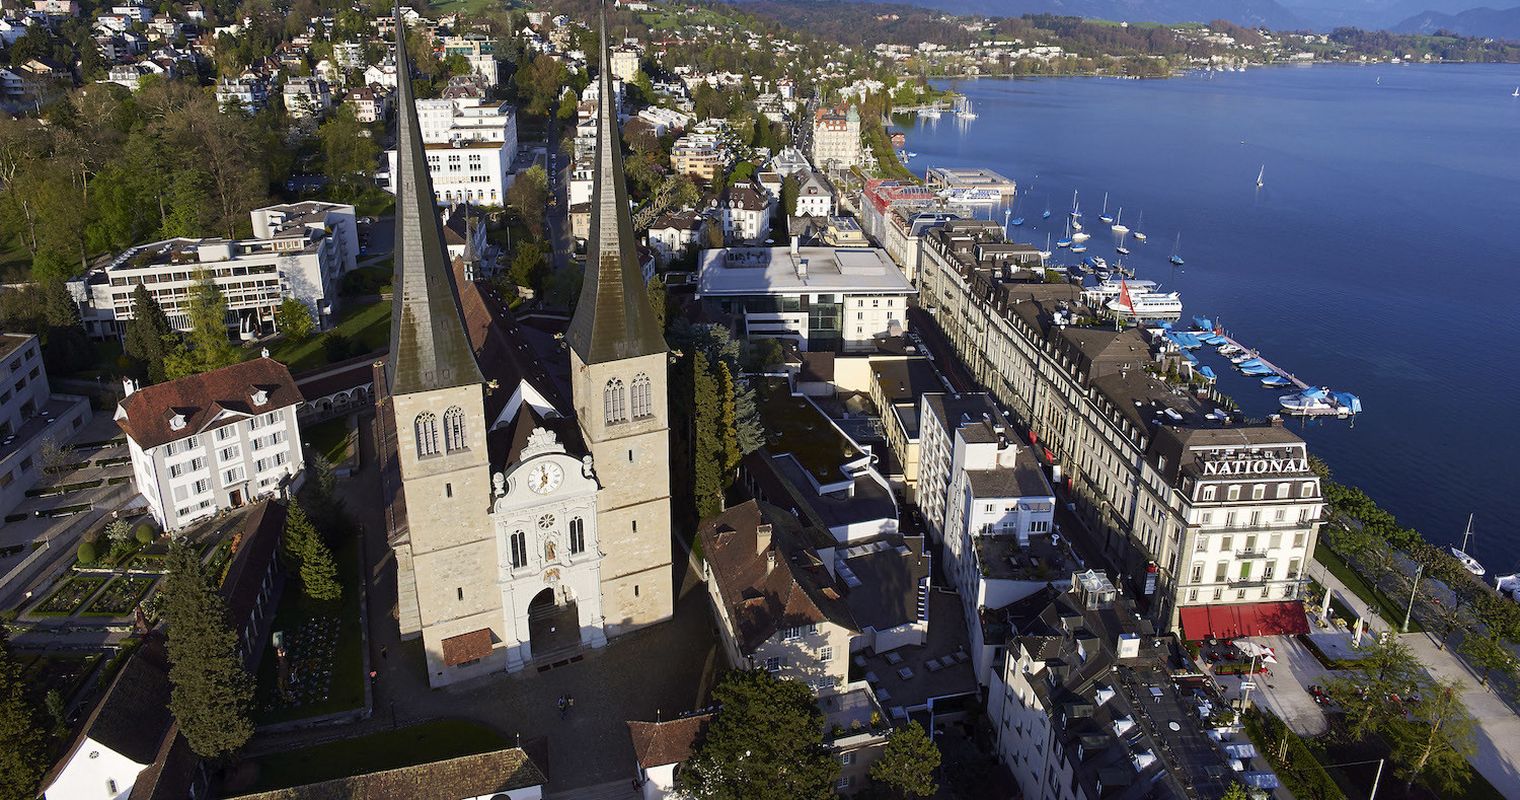 Luzern zahlt dieses Jahr über eine Million Franken an den Bischof